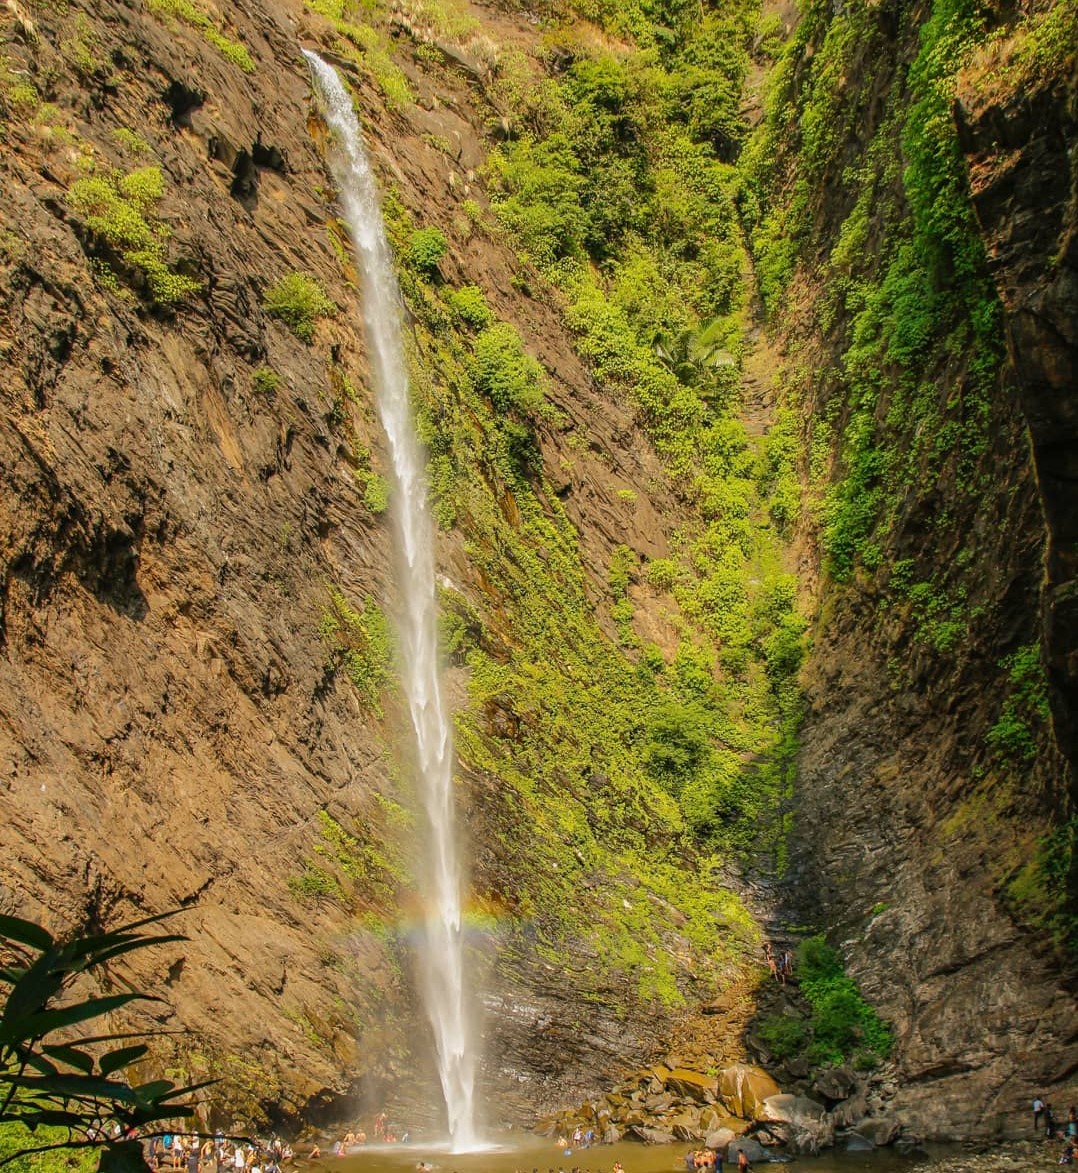 Koodlu Theertha Falls near Kudremukh